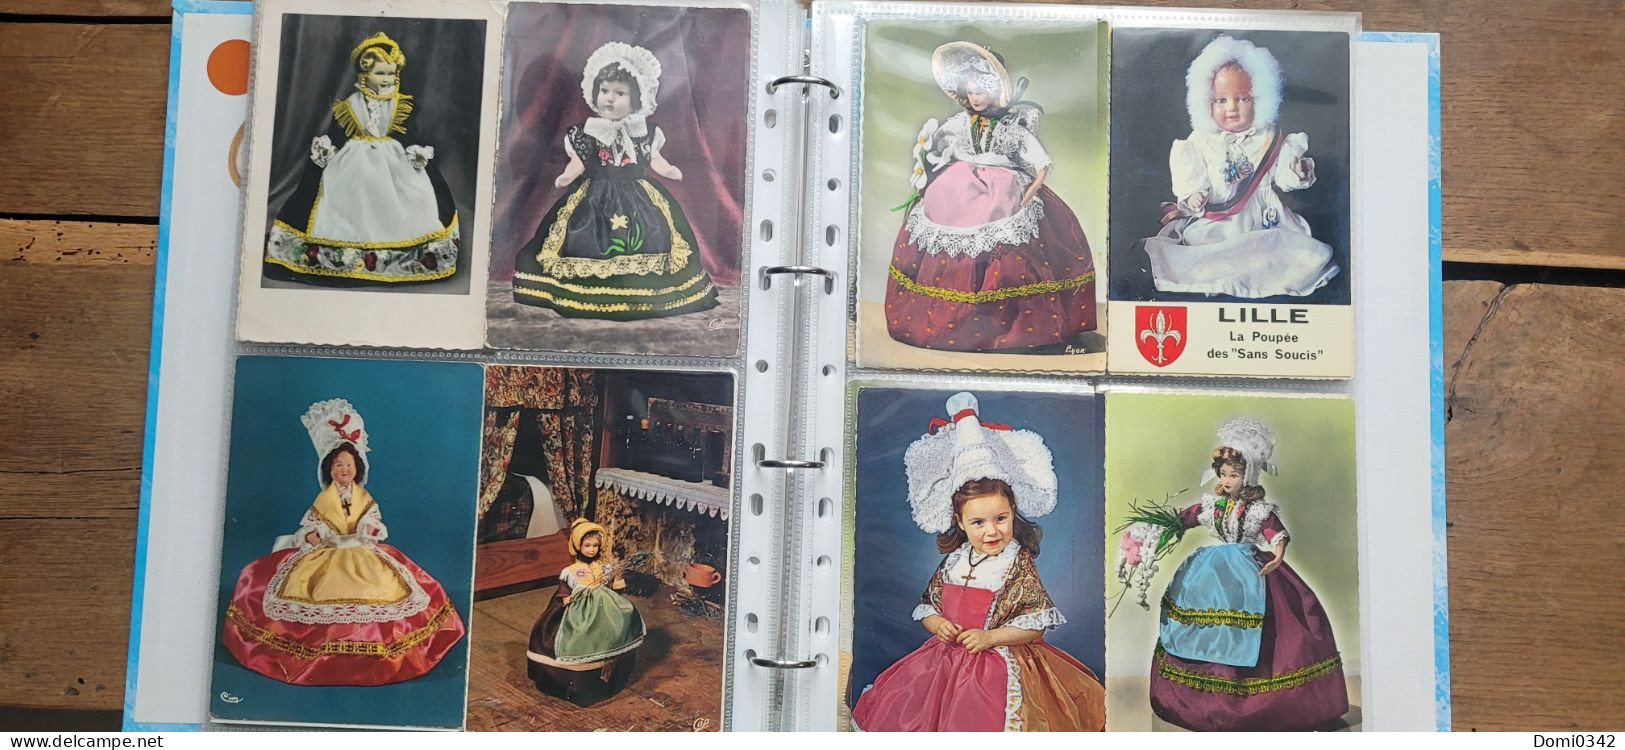 Lot de 145 cartes postales SM thème : poupée